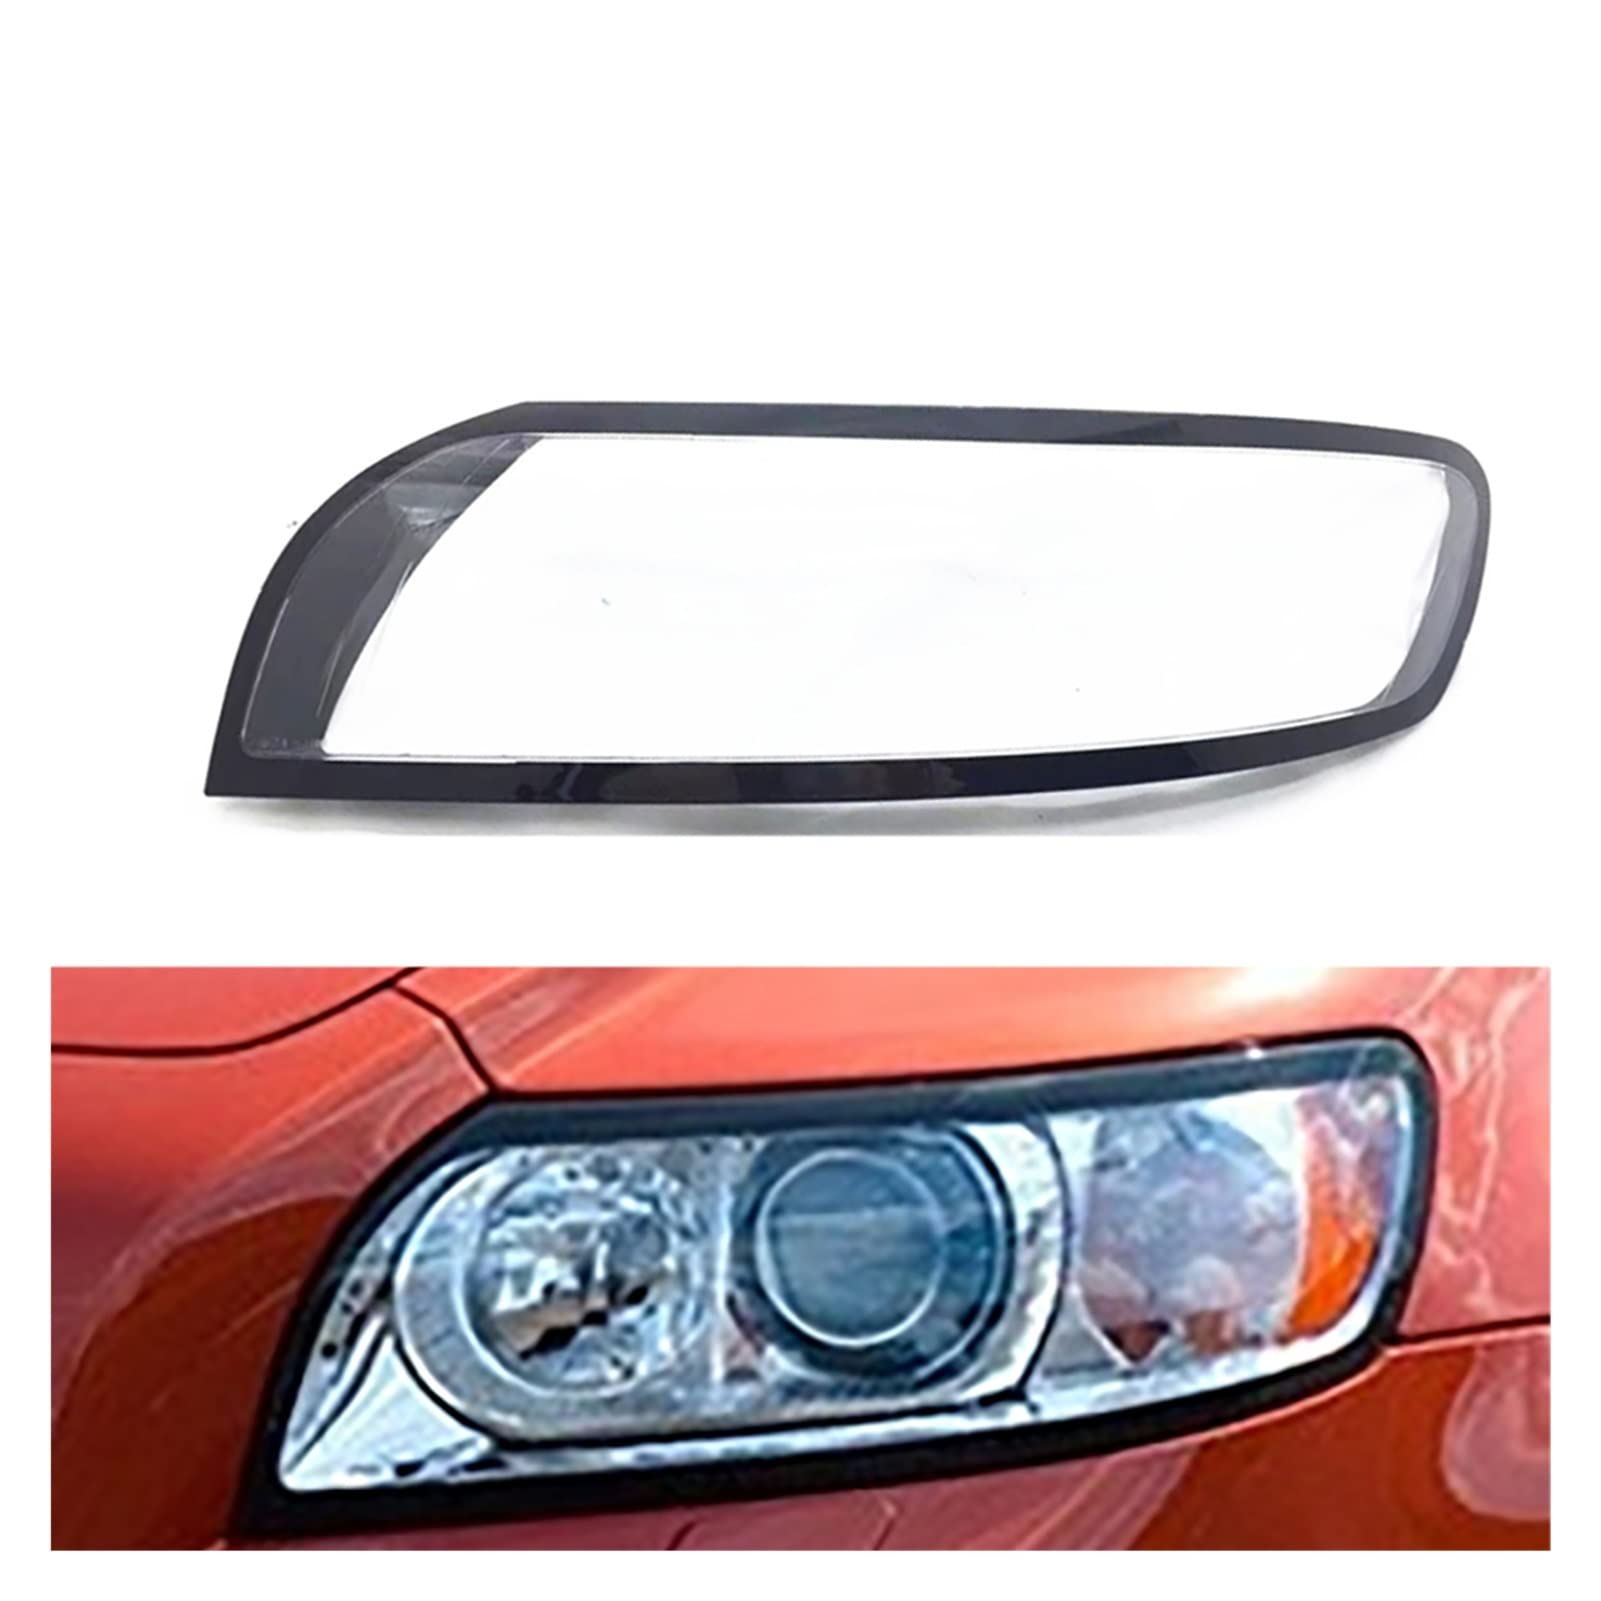 Scheinwerfer Objektiv Glas Lampenschirm Abdeckung Autoscheinwerferlinse Für Volvo S40 2007-2012 Auto Scheinwerfer Abdeckung (Farbe : Links)